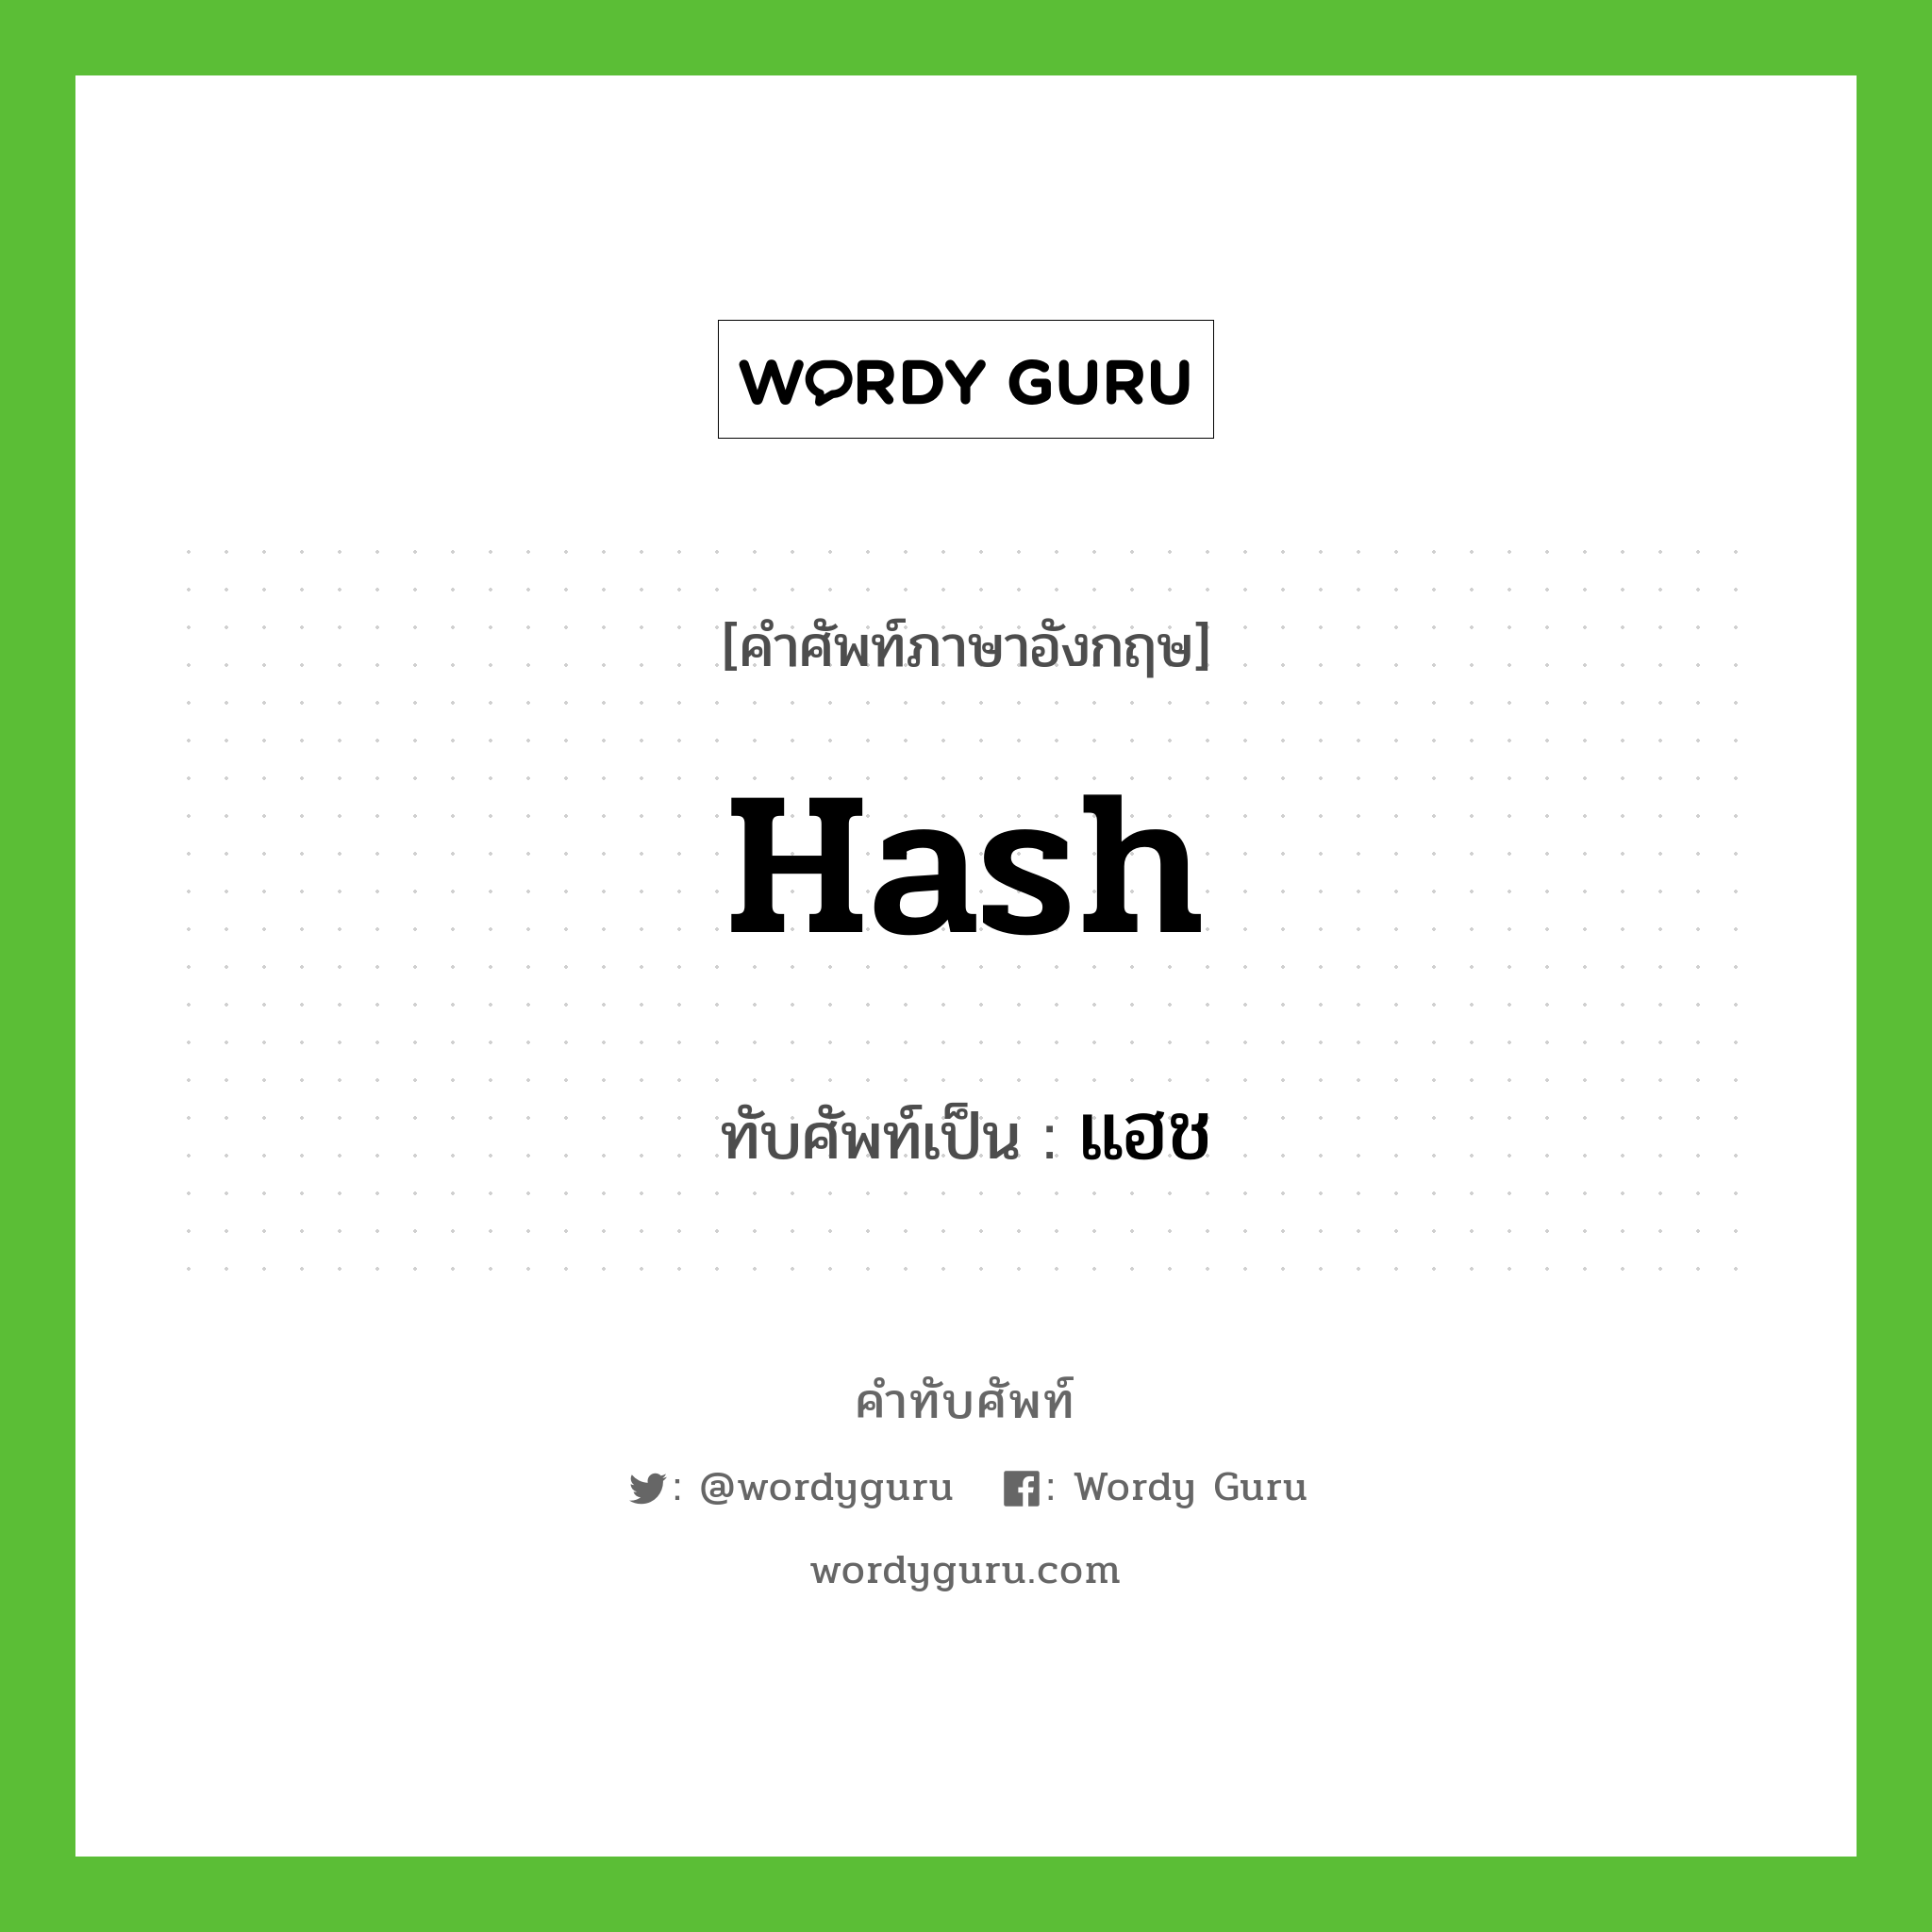 hash เขียนเป็นคำไทยว่าอะไร?, คำศัพท์ภาษาอังกฤษ hash ทับศัพท์เป็น แฮช